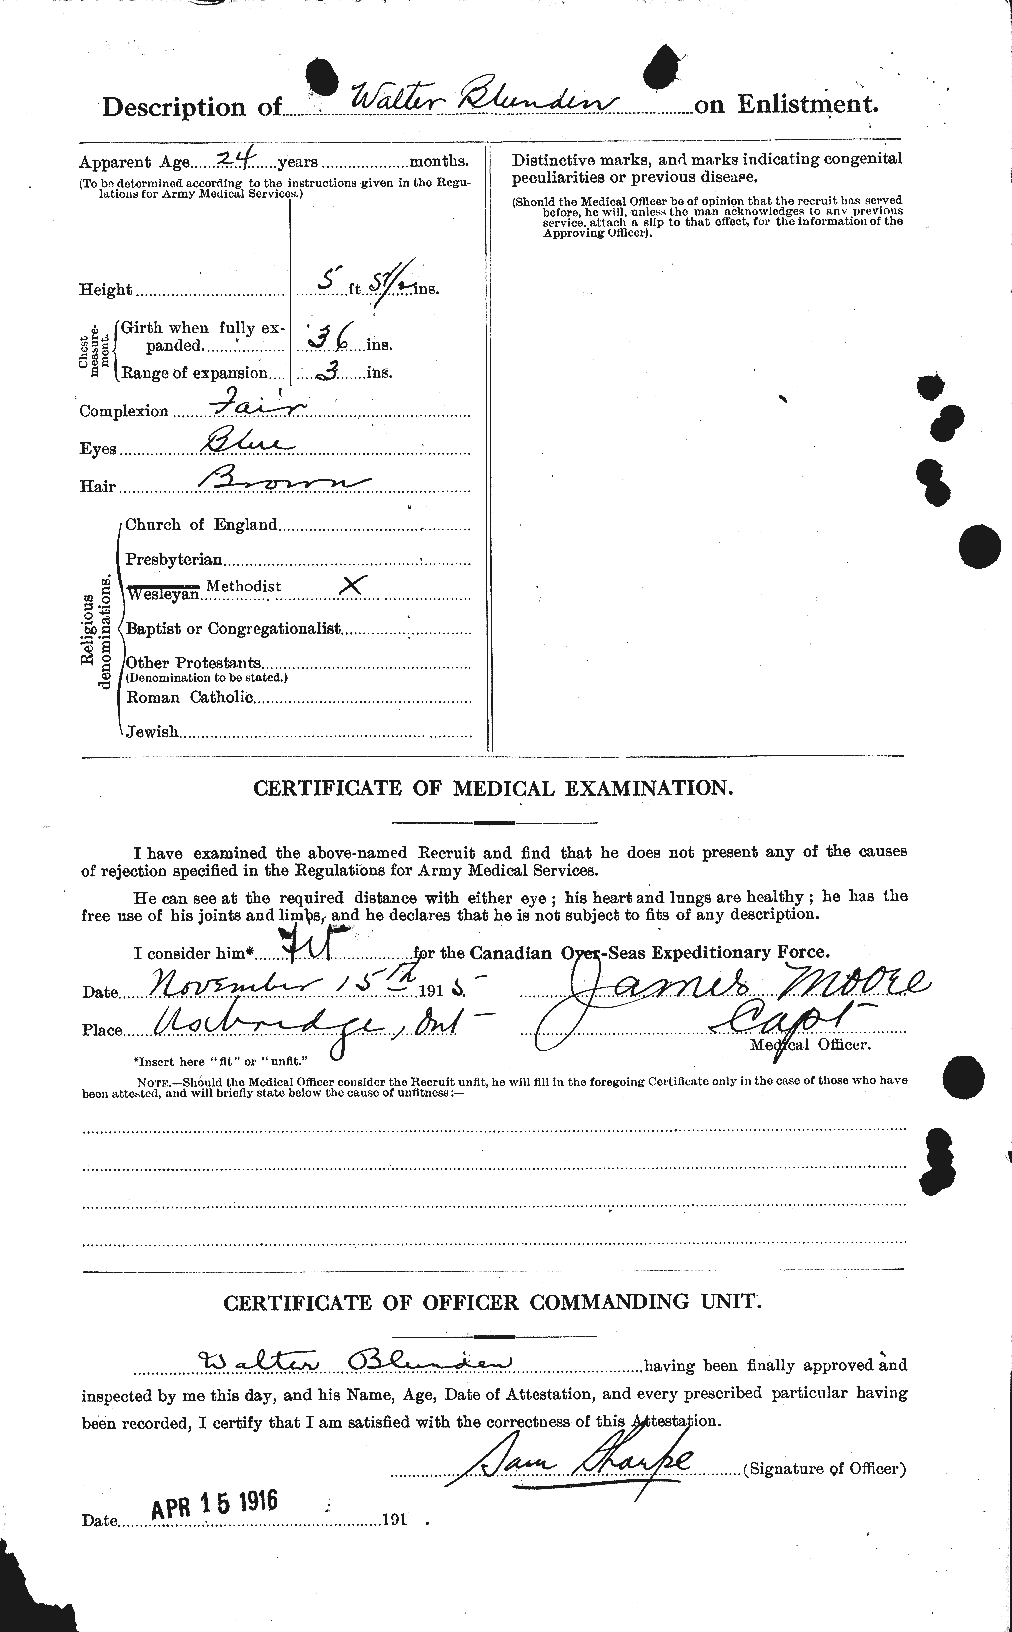 Dossiers du Personnel de la Première Guerre mondiale - CEC 247223b